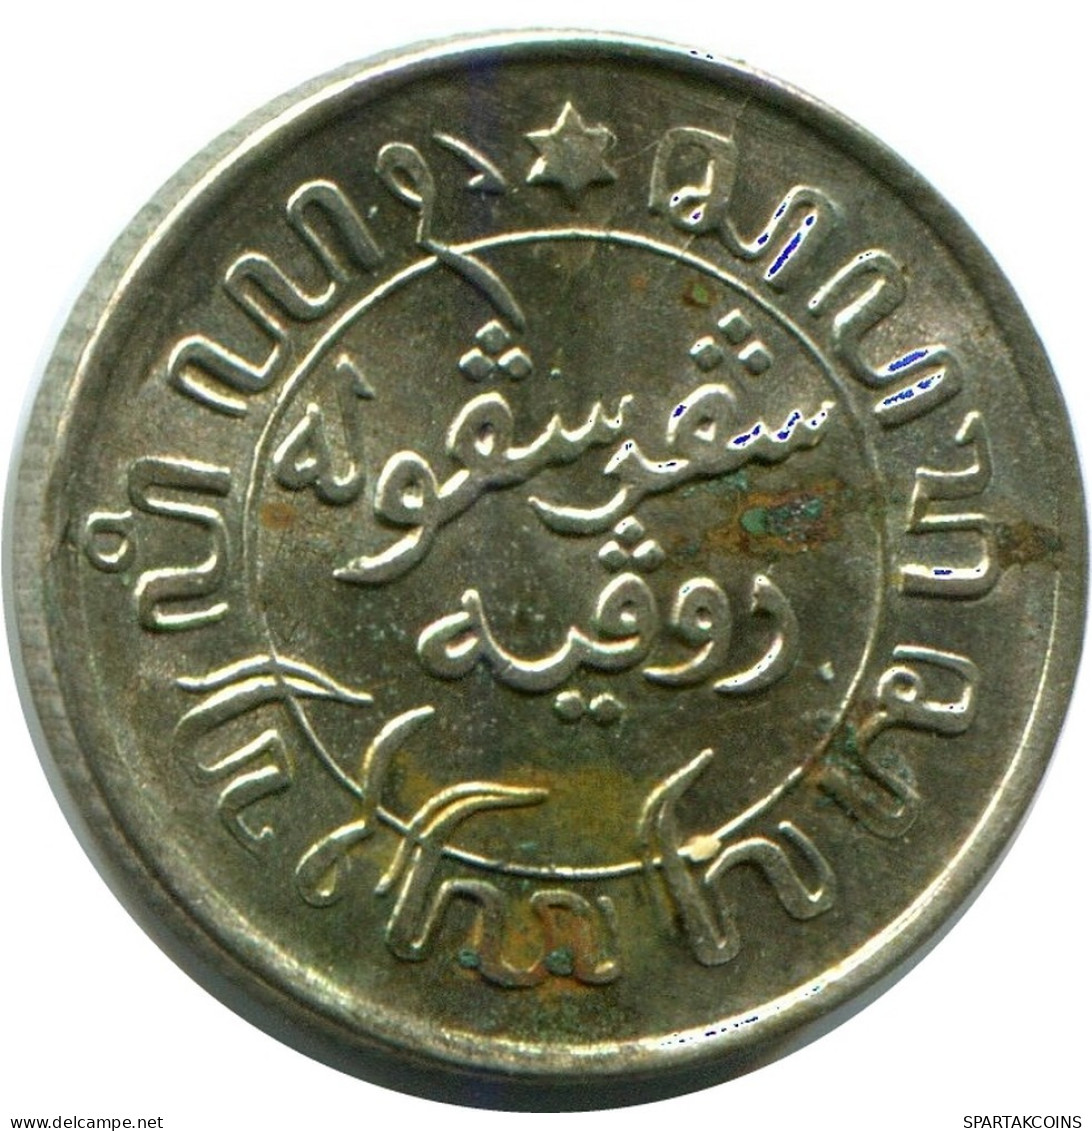 1/10 GULDEN 1941 INDIAS ORIENTALES DE LOS PAÍSES BAJOS PLATA Moneda #AZ100.E.A - Dutch East Indies